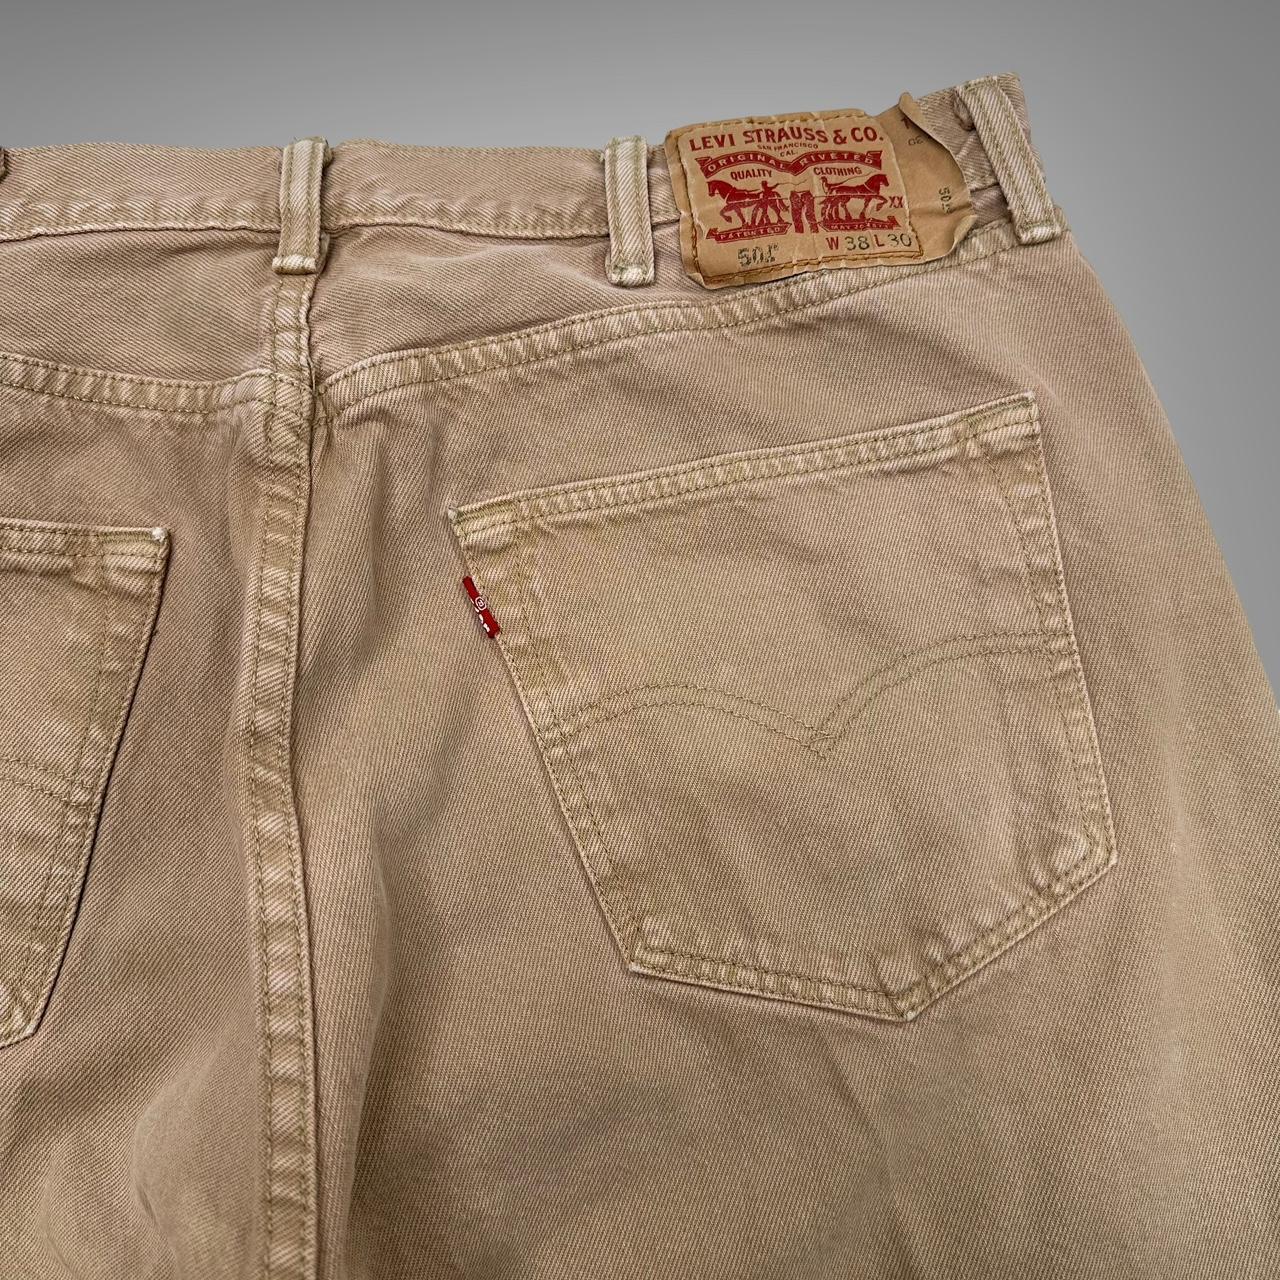 Vintage brown Levi’s 501 jeans fits a waist size 36... - Depop